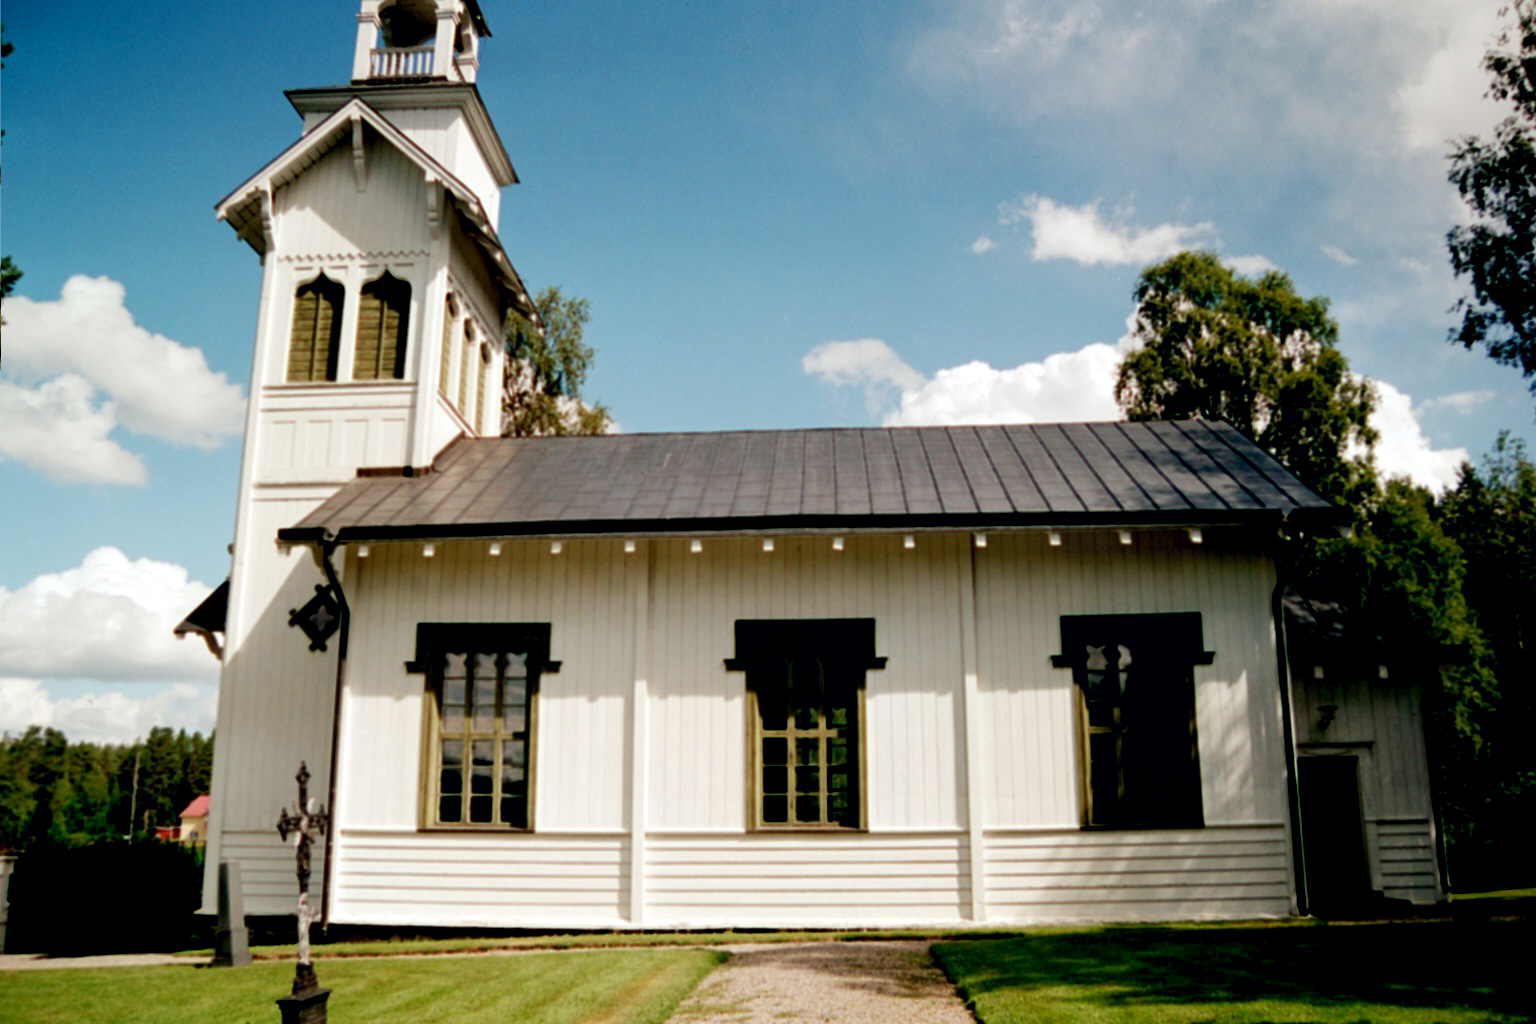 Gillhovs kapell, exteriör bild av fasaden mot väster.